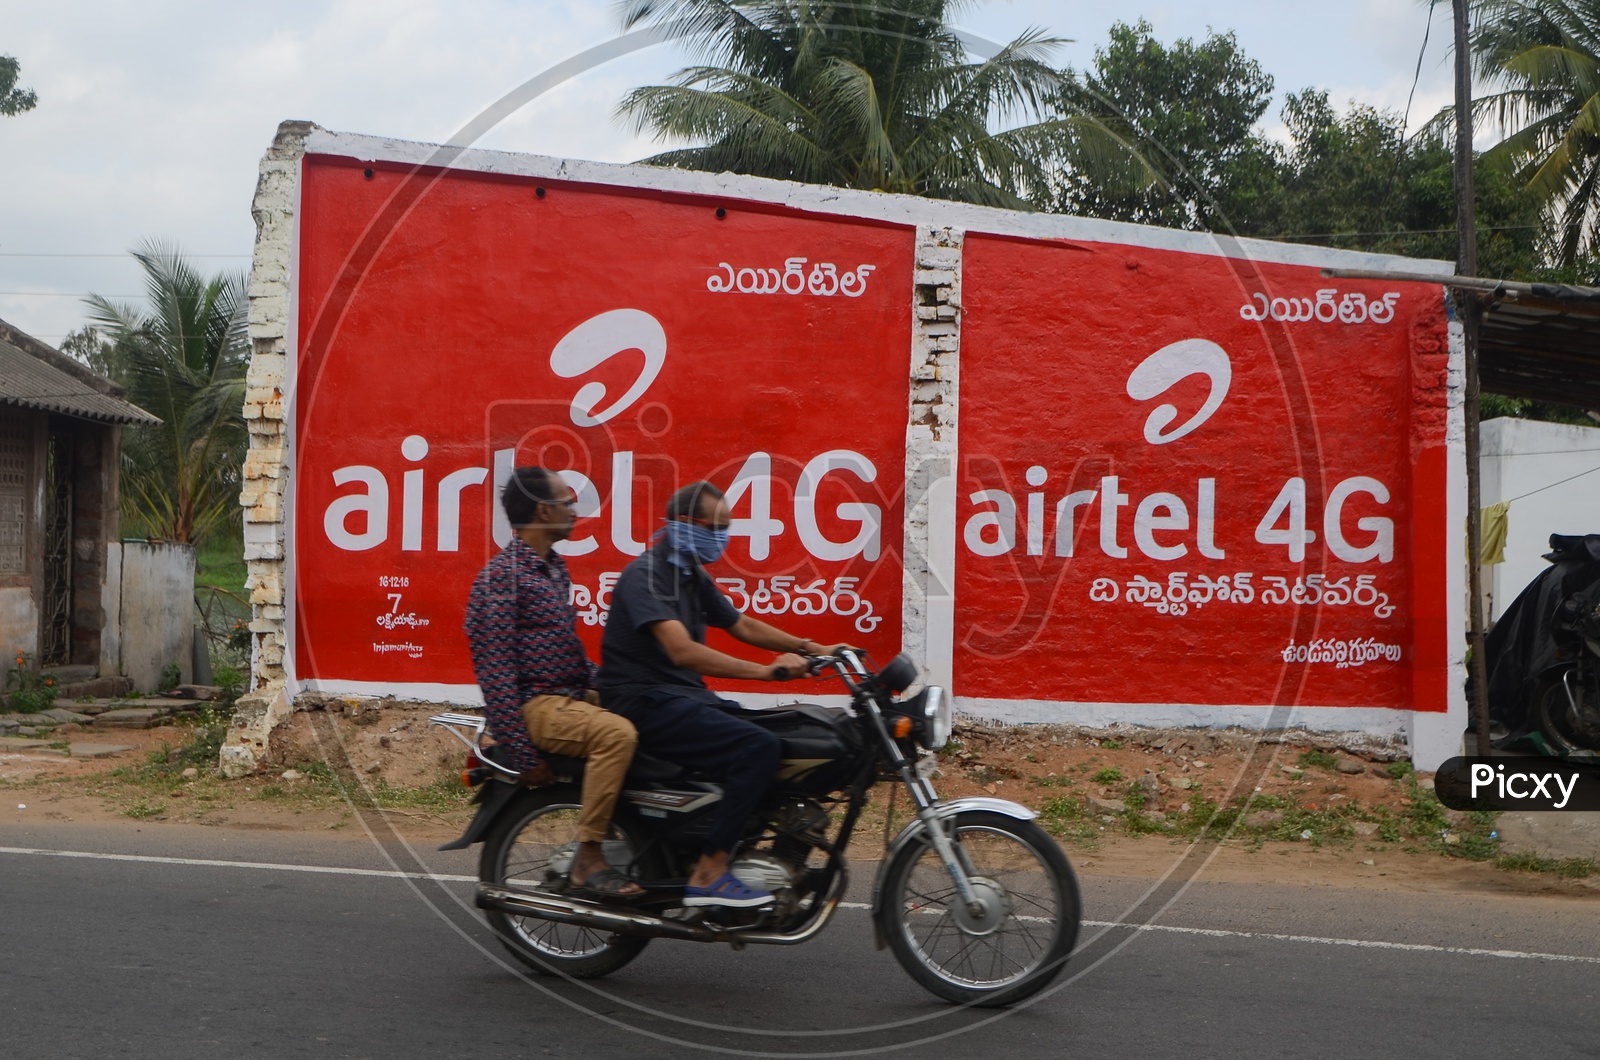 Airtel 4g telecom operator logo